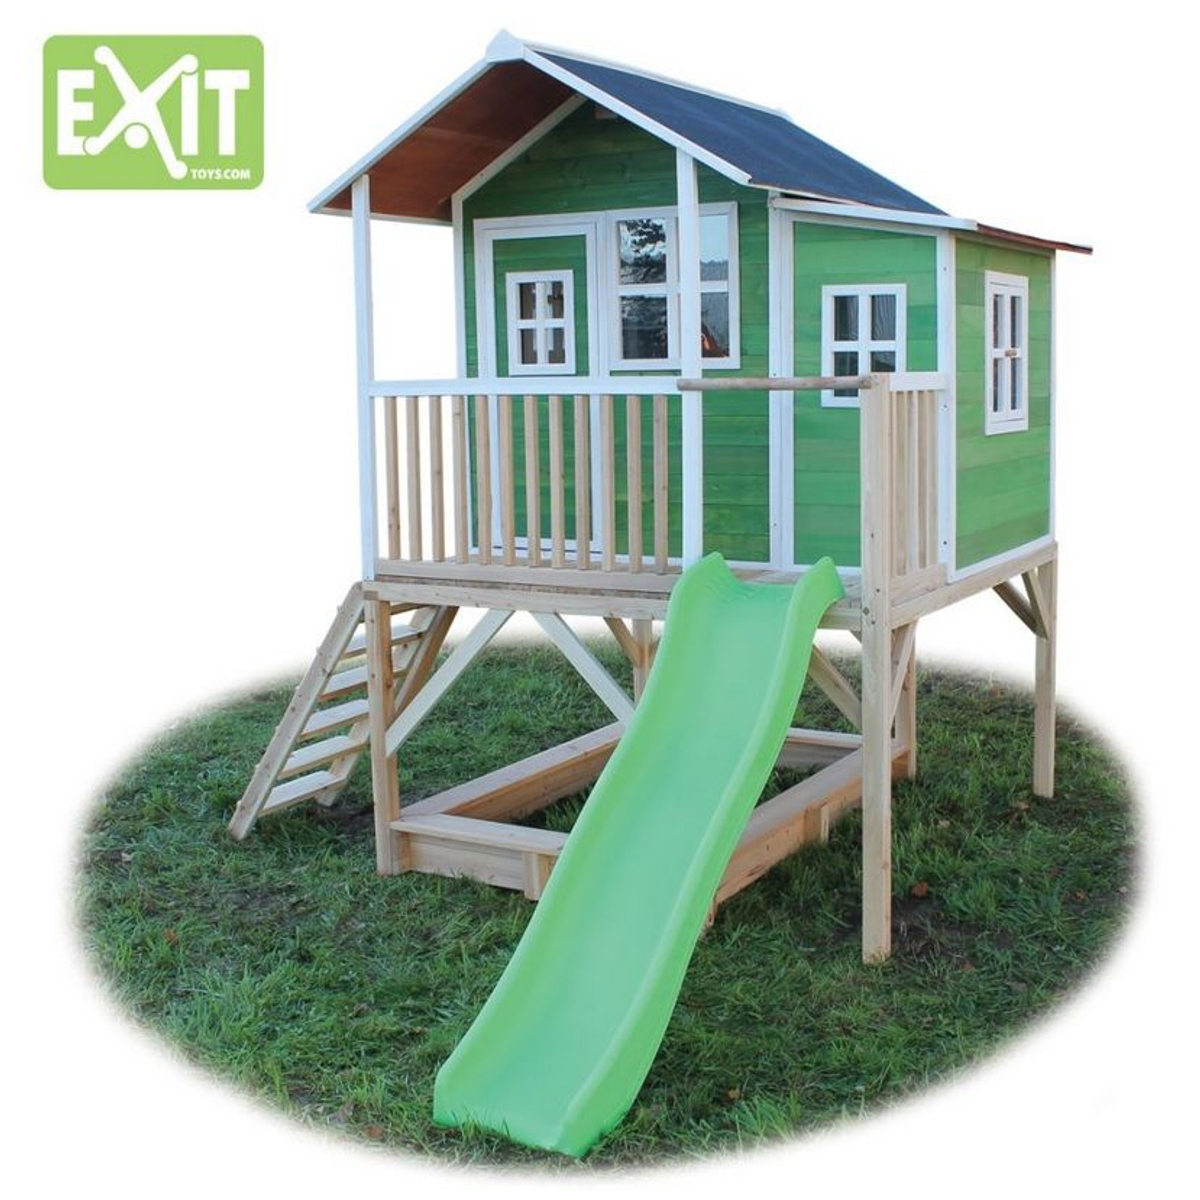 Exit Loft 550 Speelhuisje - Groen